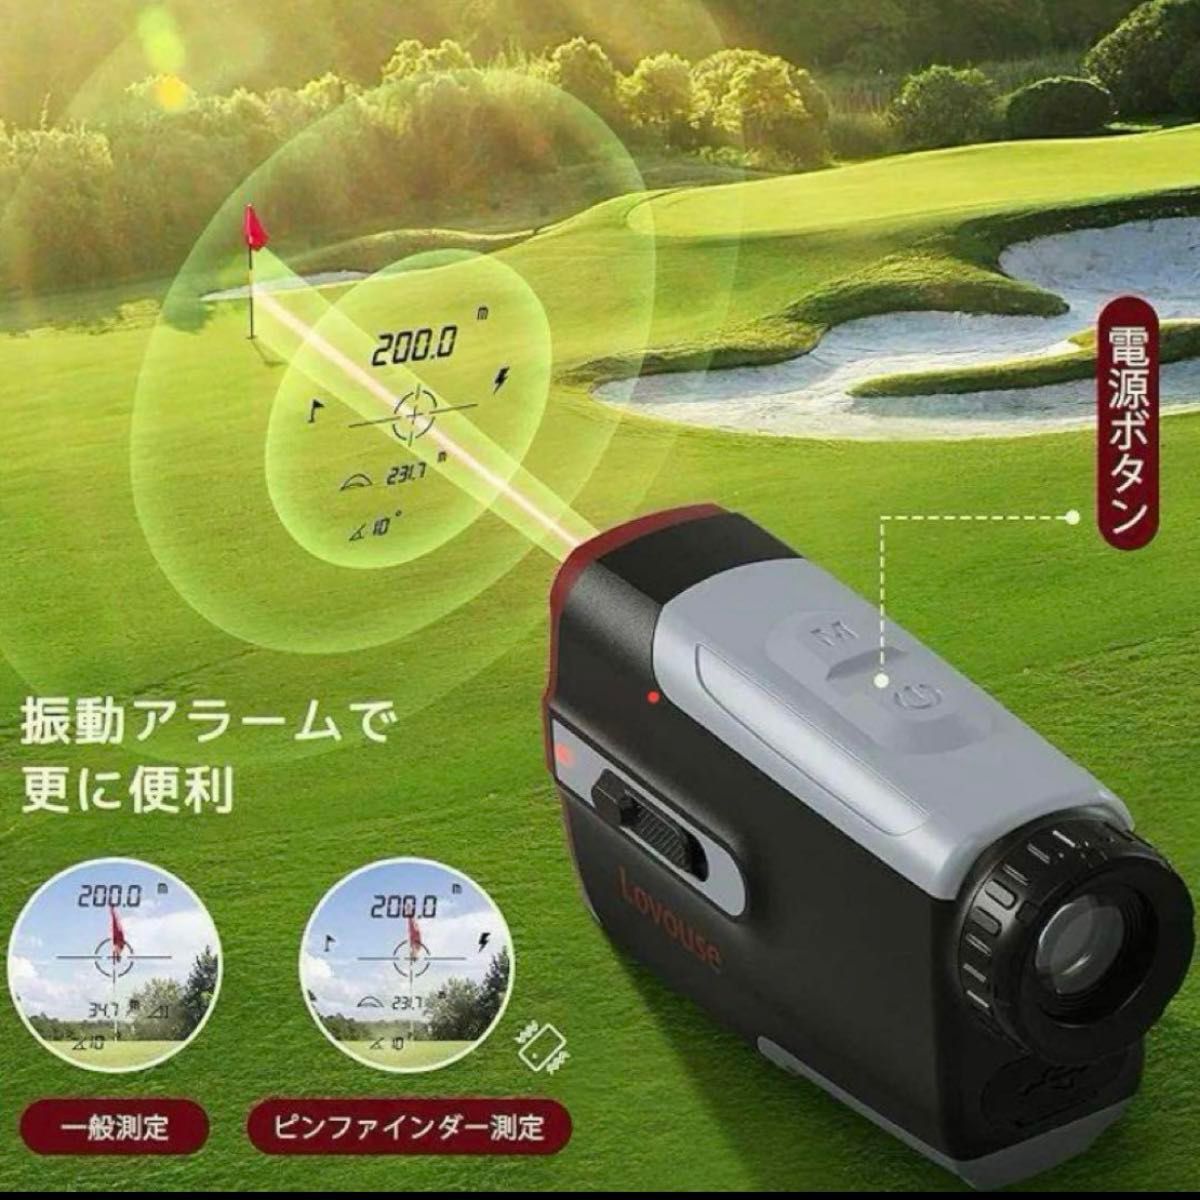 ゴルフ 距離計 レーザー 距離測定器 高低差補正 競技対応 700Yd対応